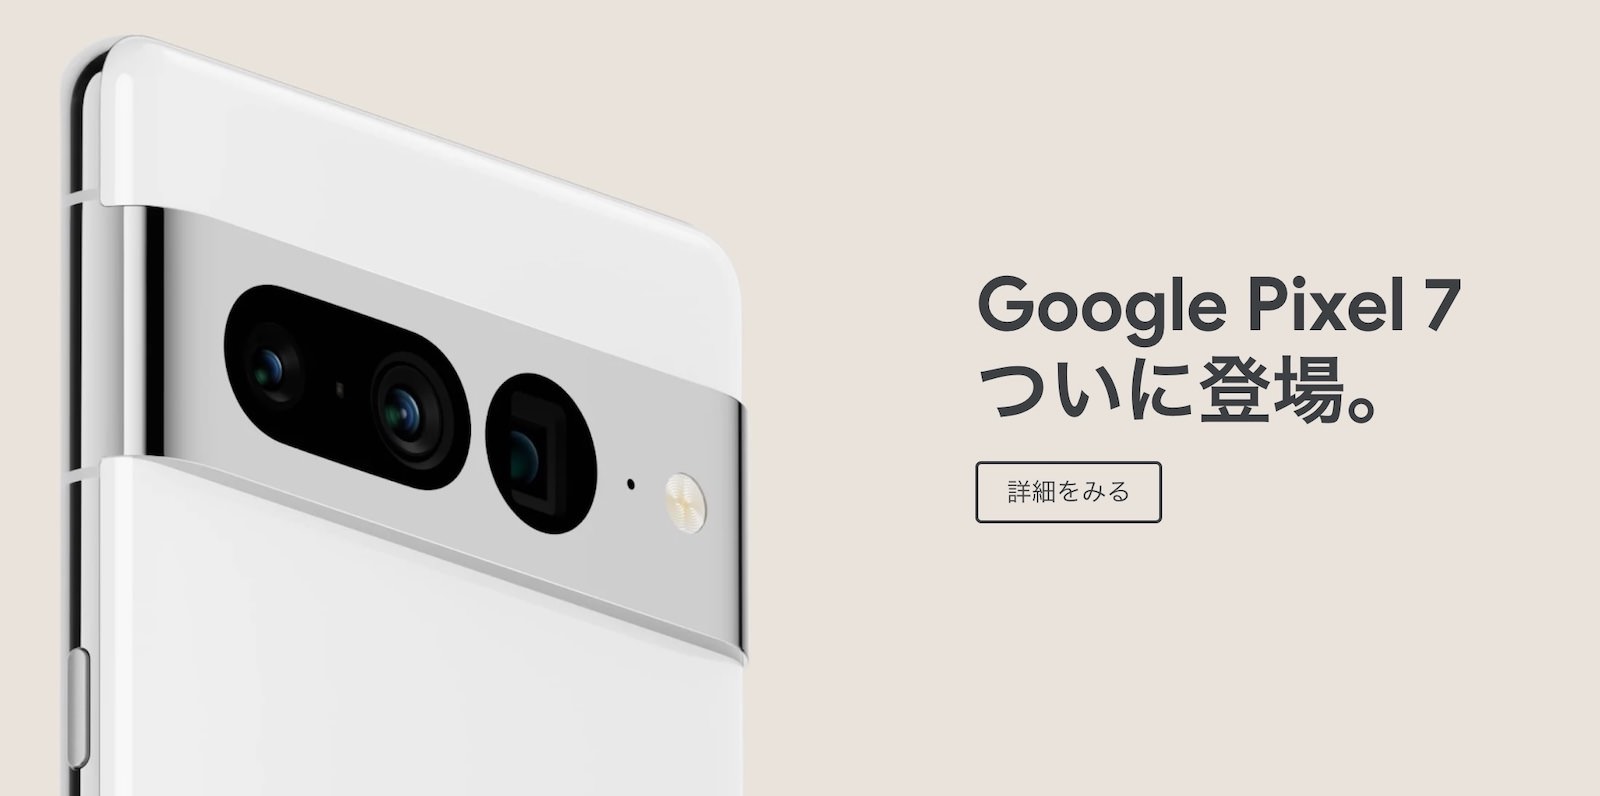 Google-Pixel-7-coming-soon.jpg